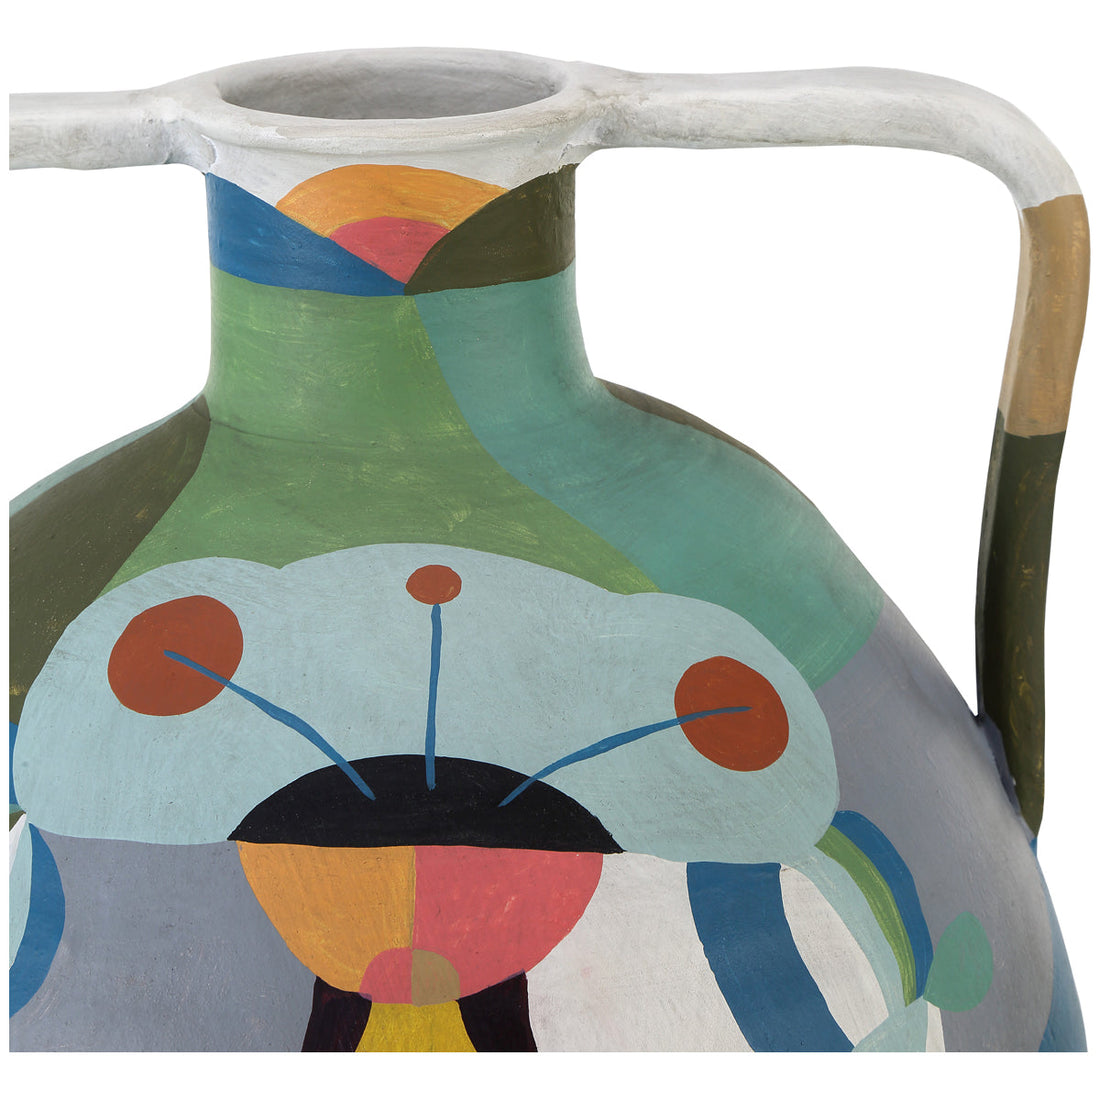 Currey and Company Amphora Vase